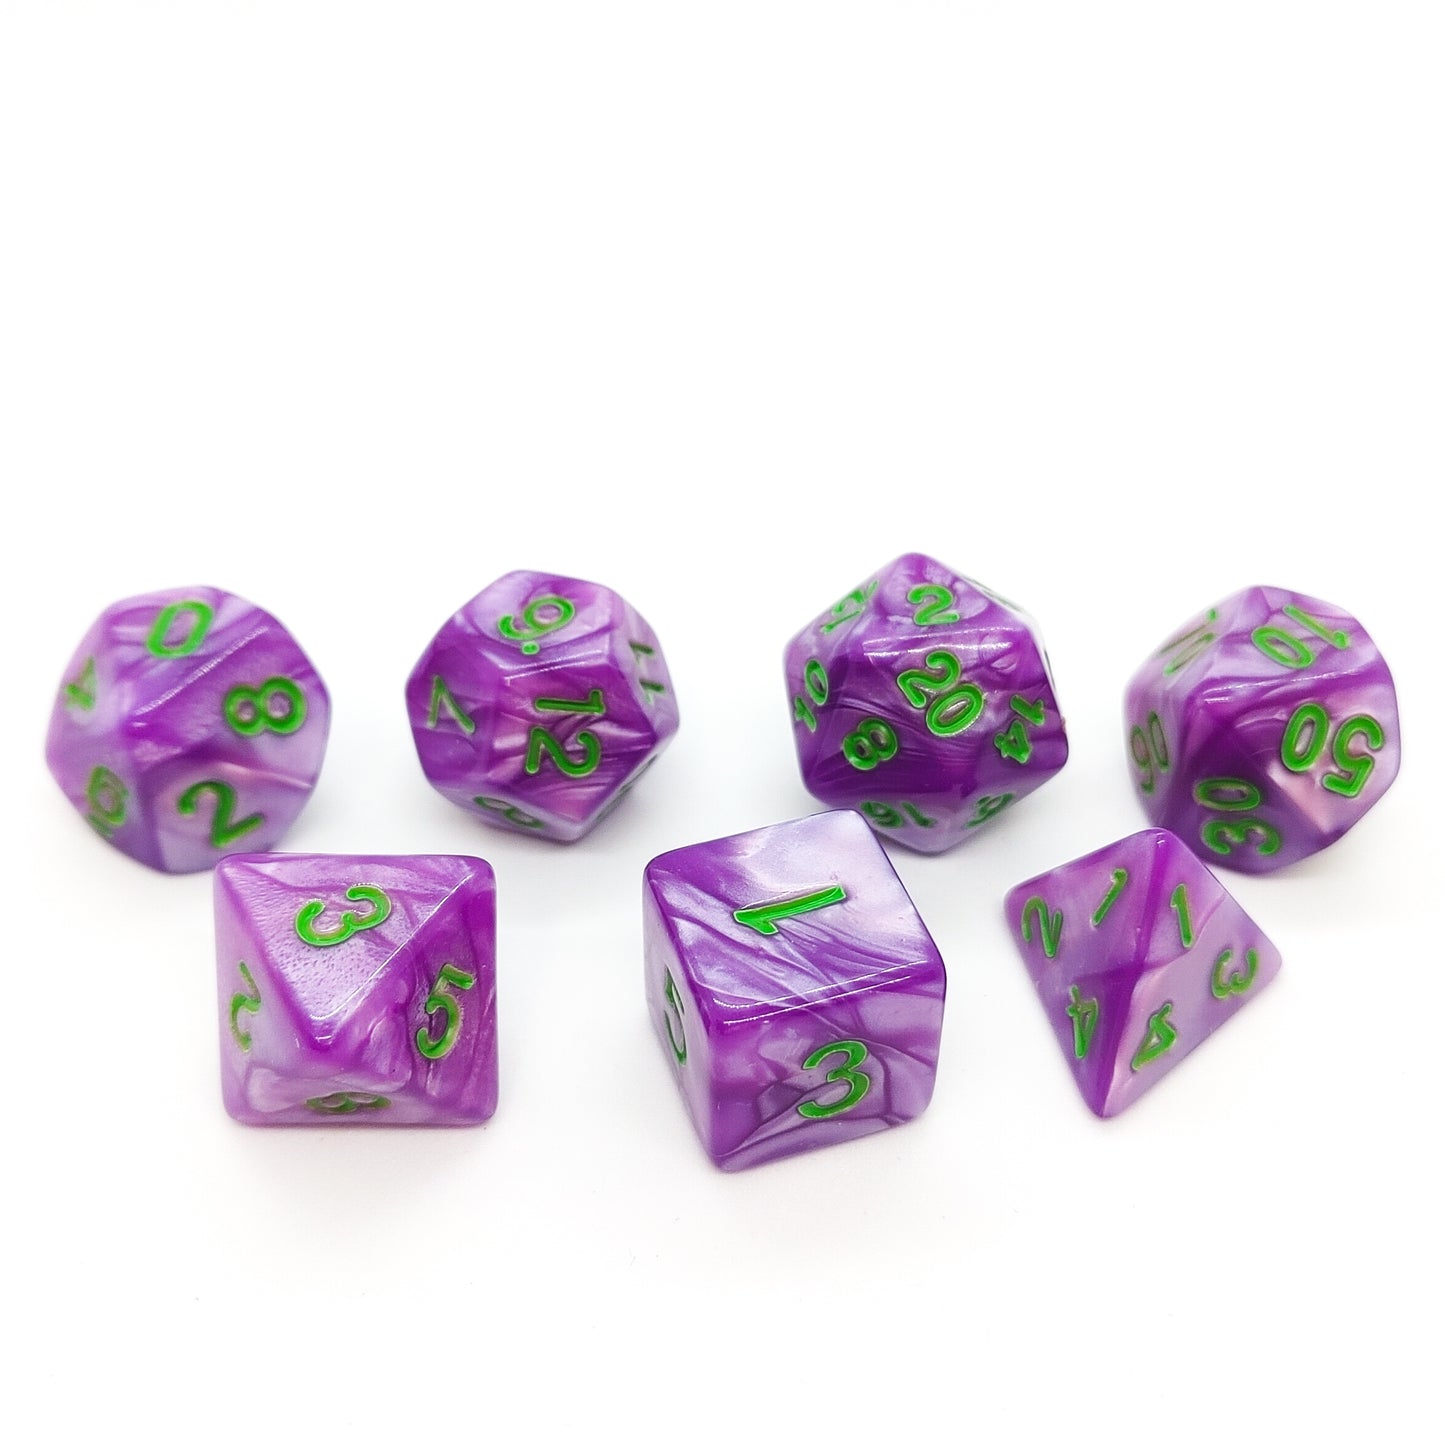 Pocket Jester - Purple Dice set - 7 piece RPG dice set